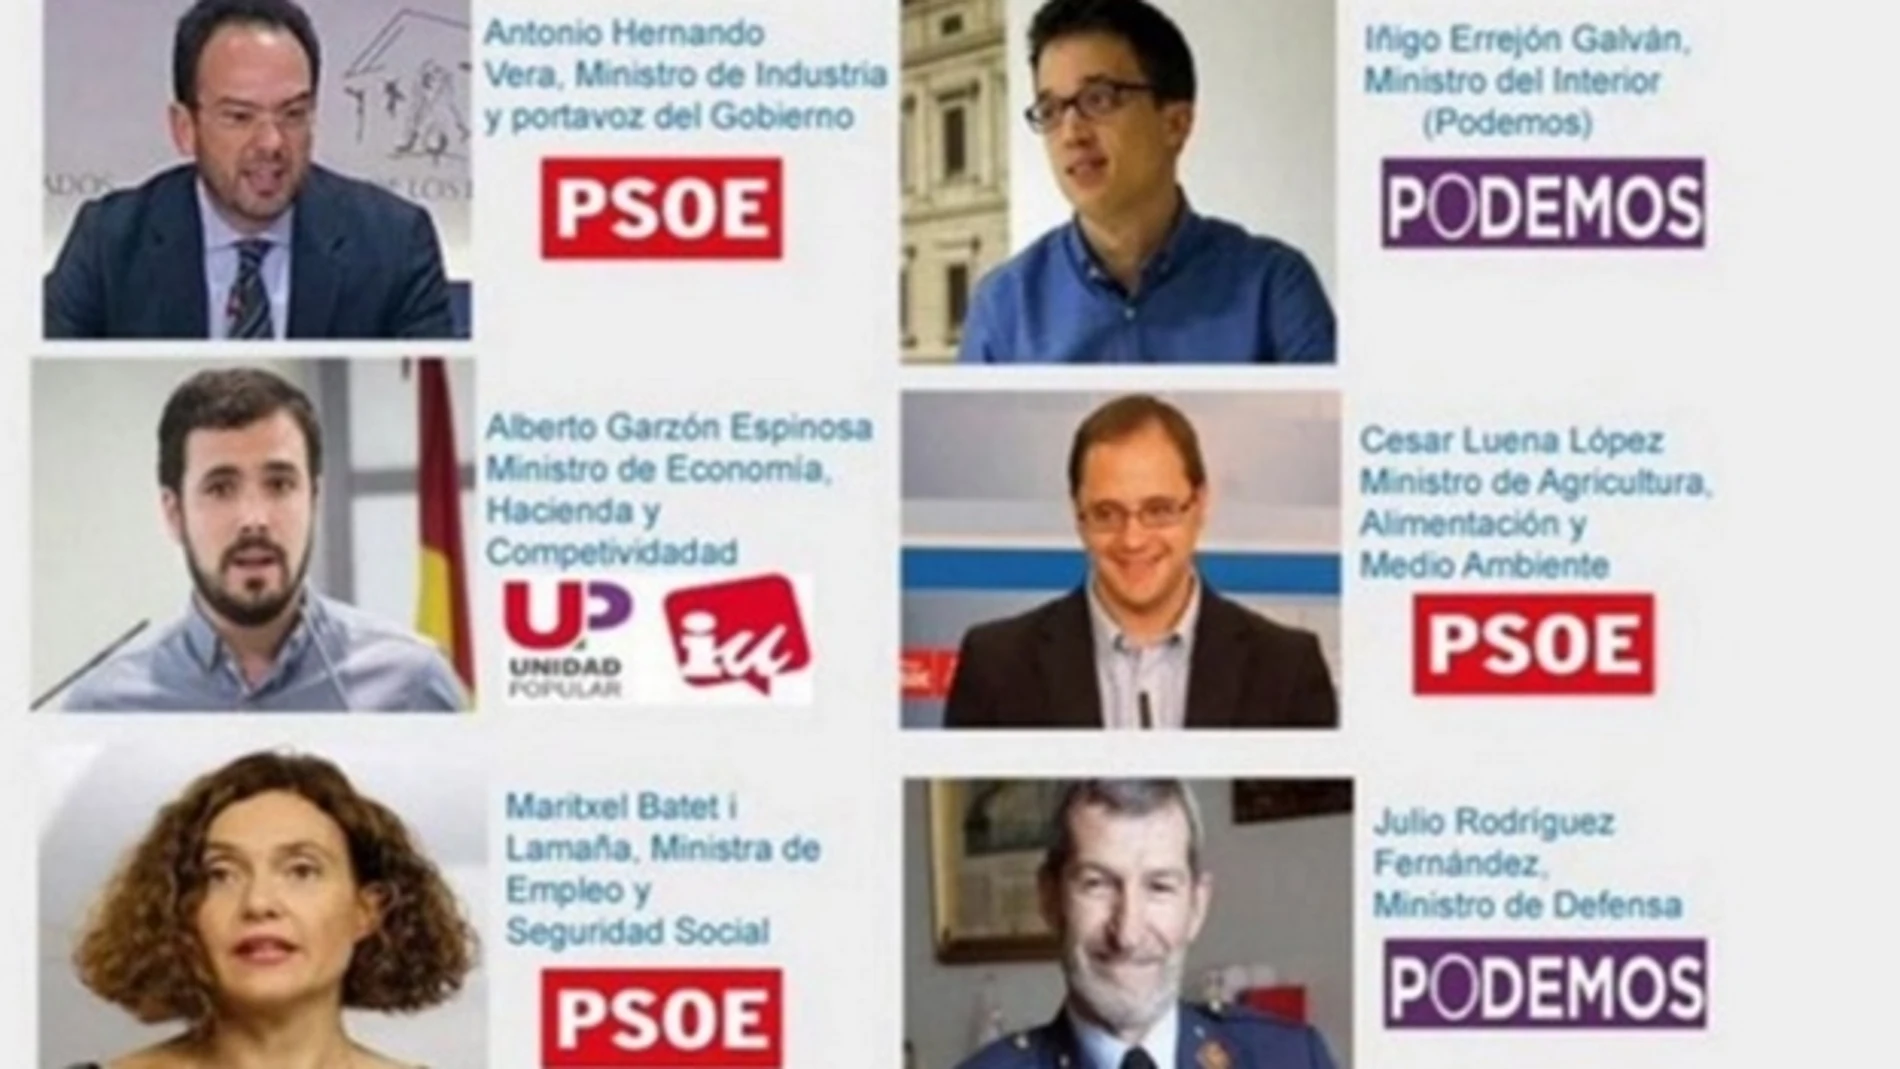 Posible reparto ministerial de Podemos y PSOE